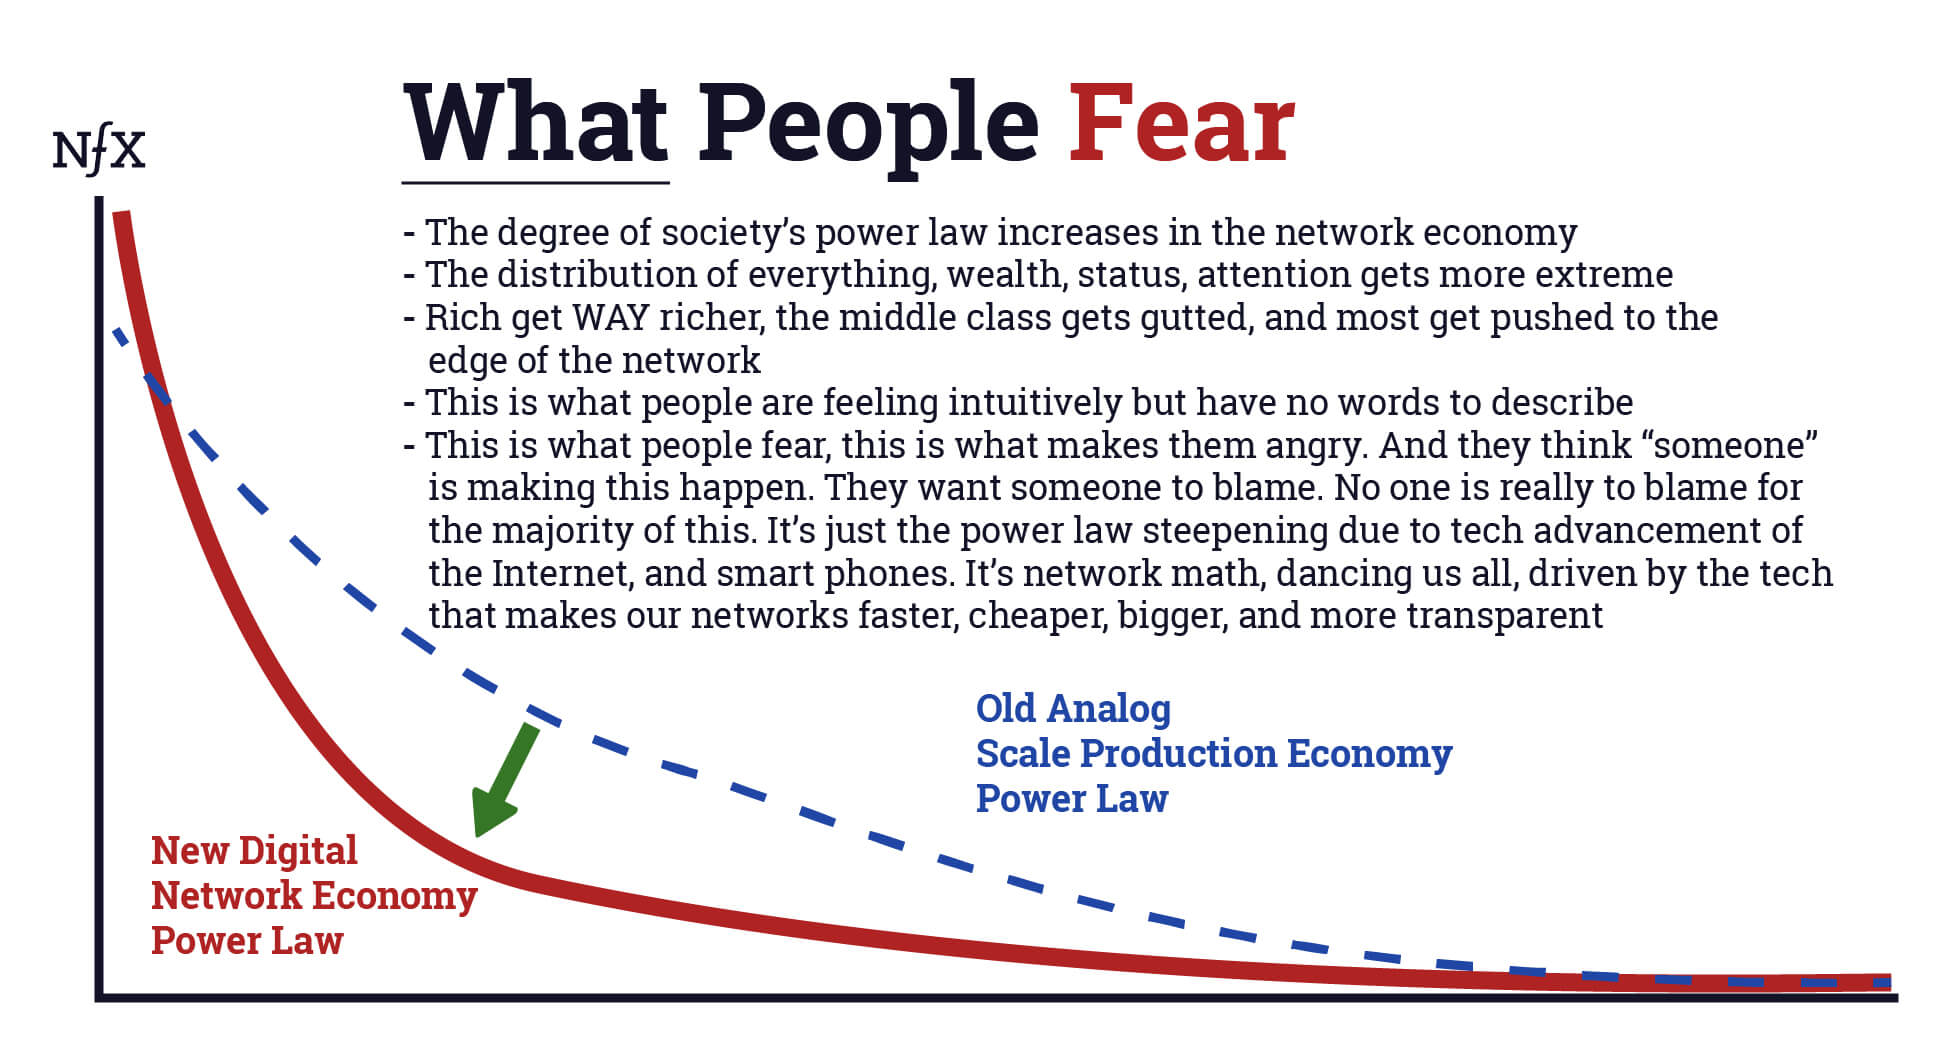 Network Economy - 5